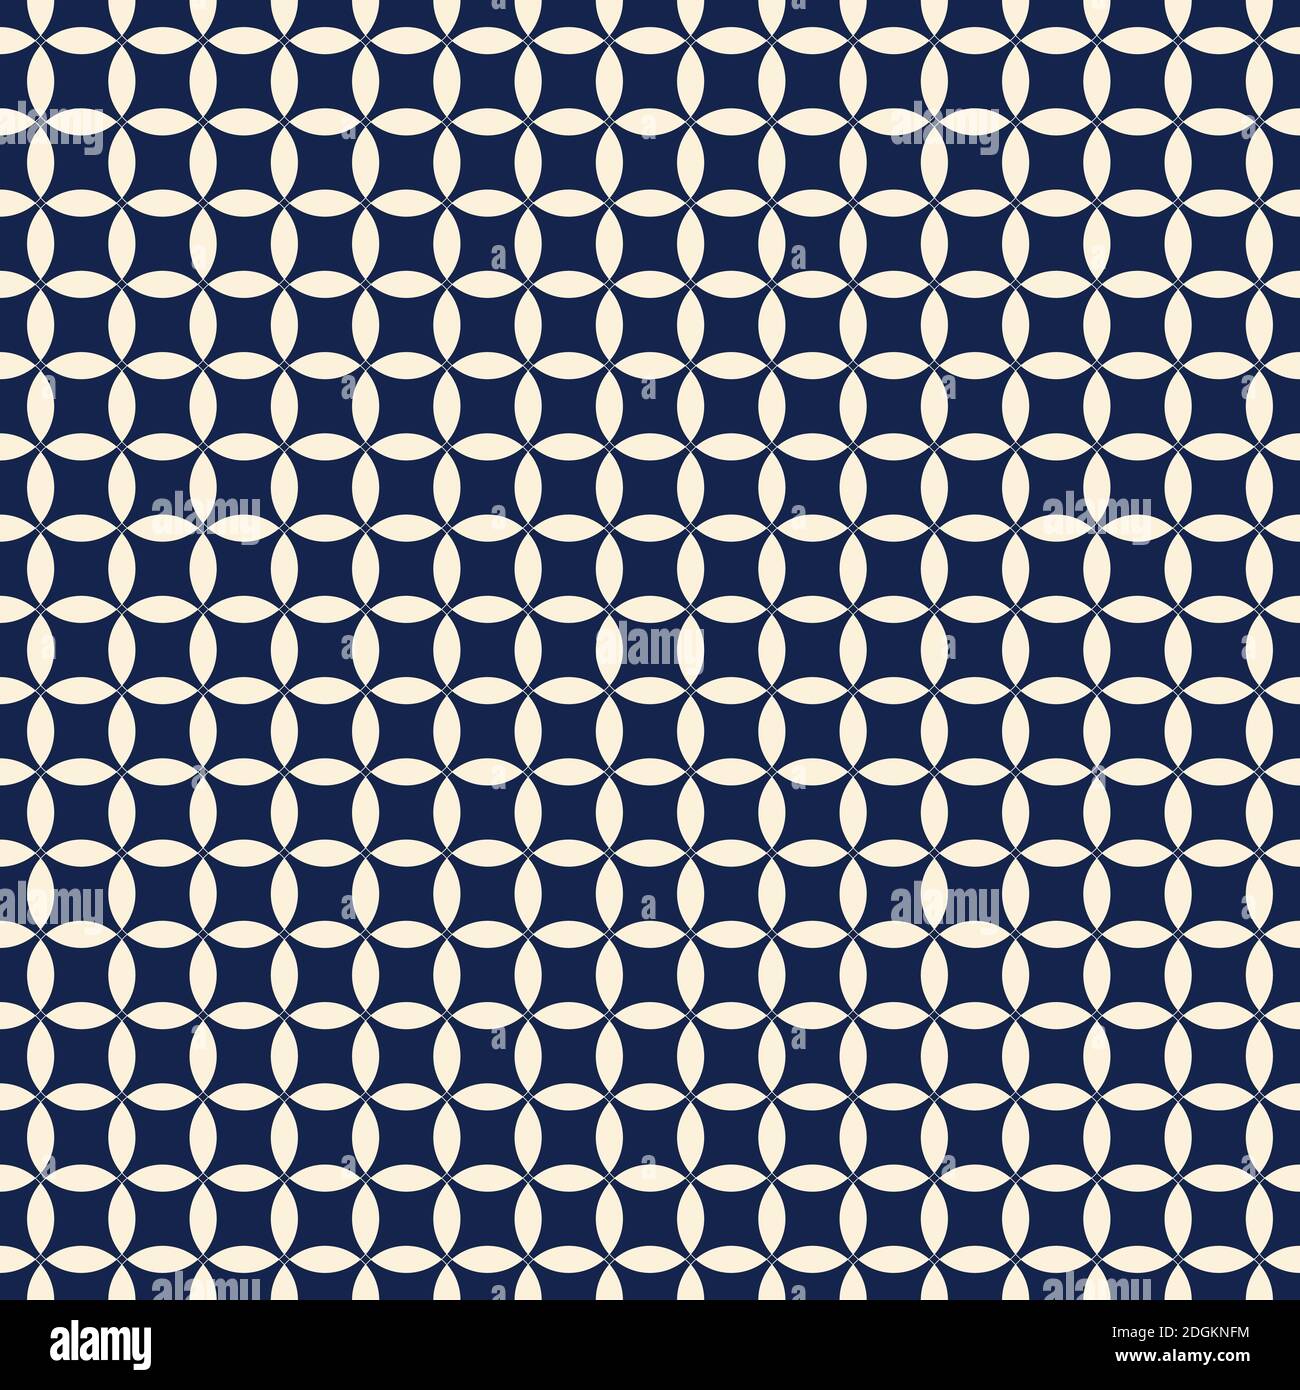 Ornament Vektor Illustration. Asiatische nahtlose Kreise Muster. Japanisches blaues Muster. Vektorgrafik Stock Vektor